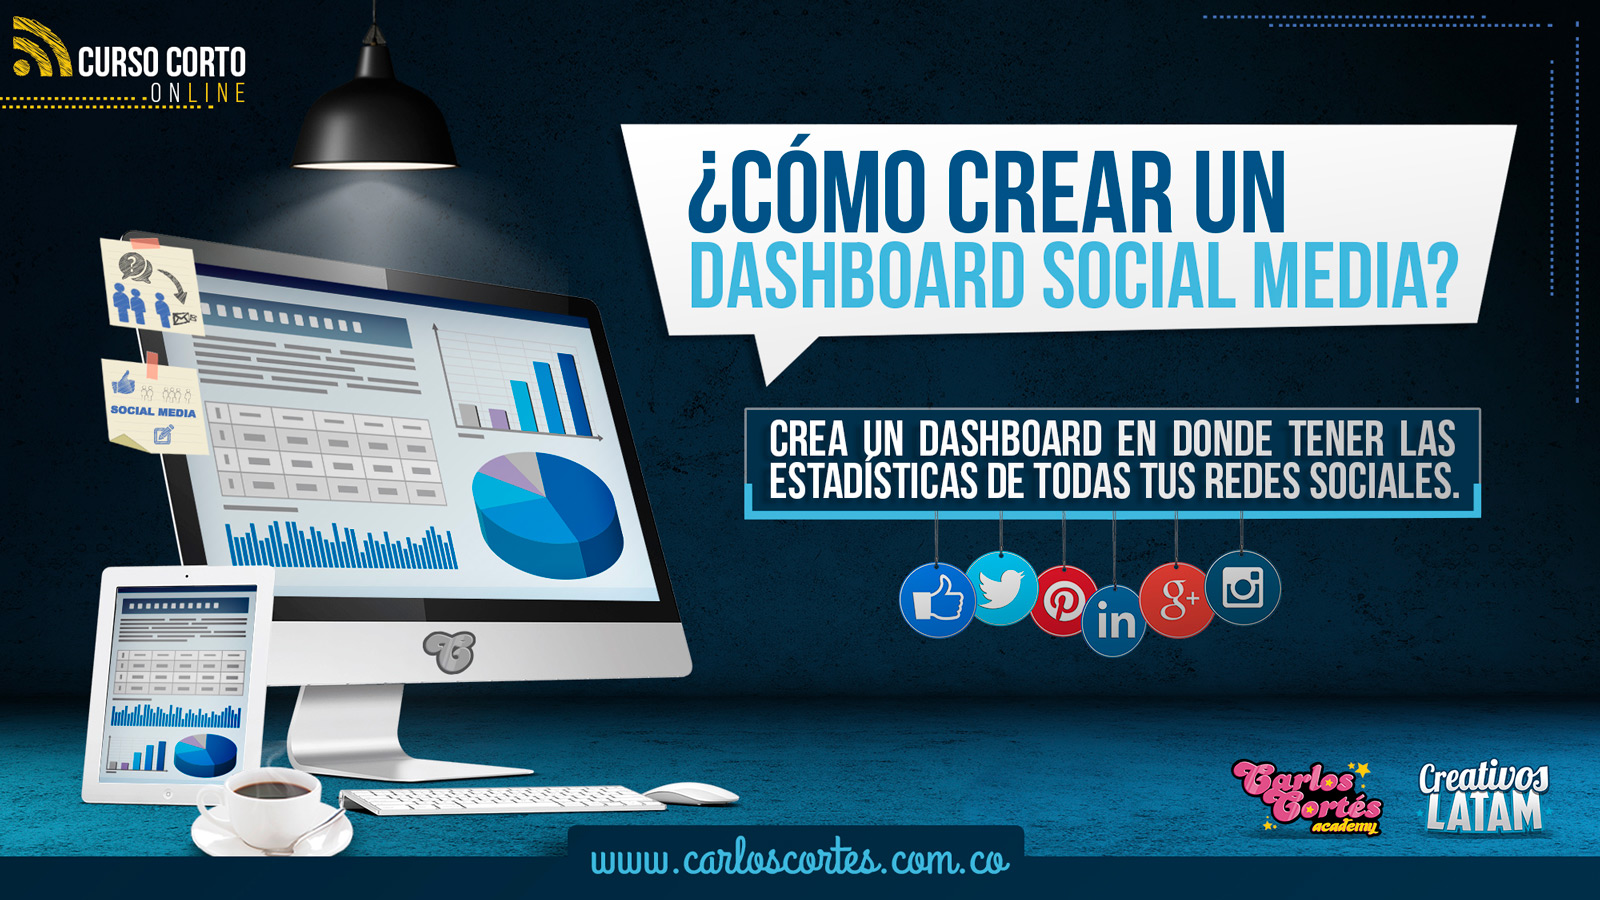 Curso como crear un dashboard social media